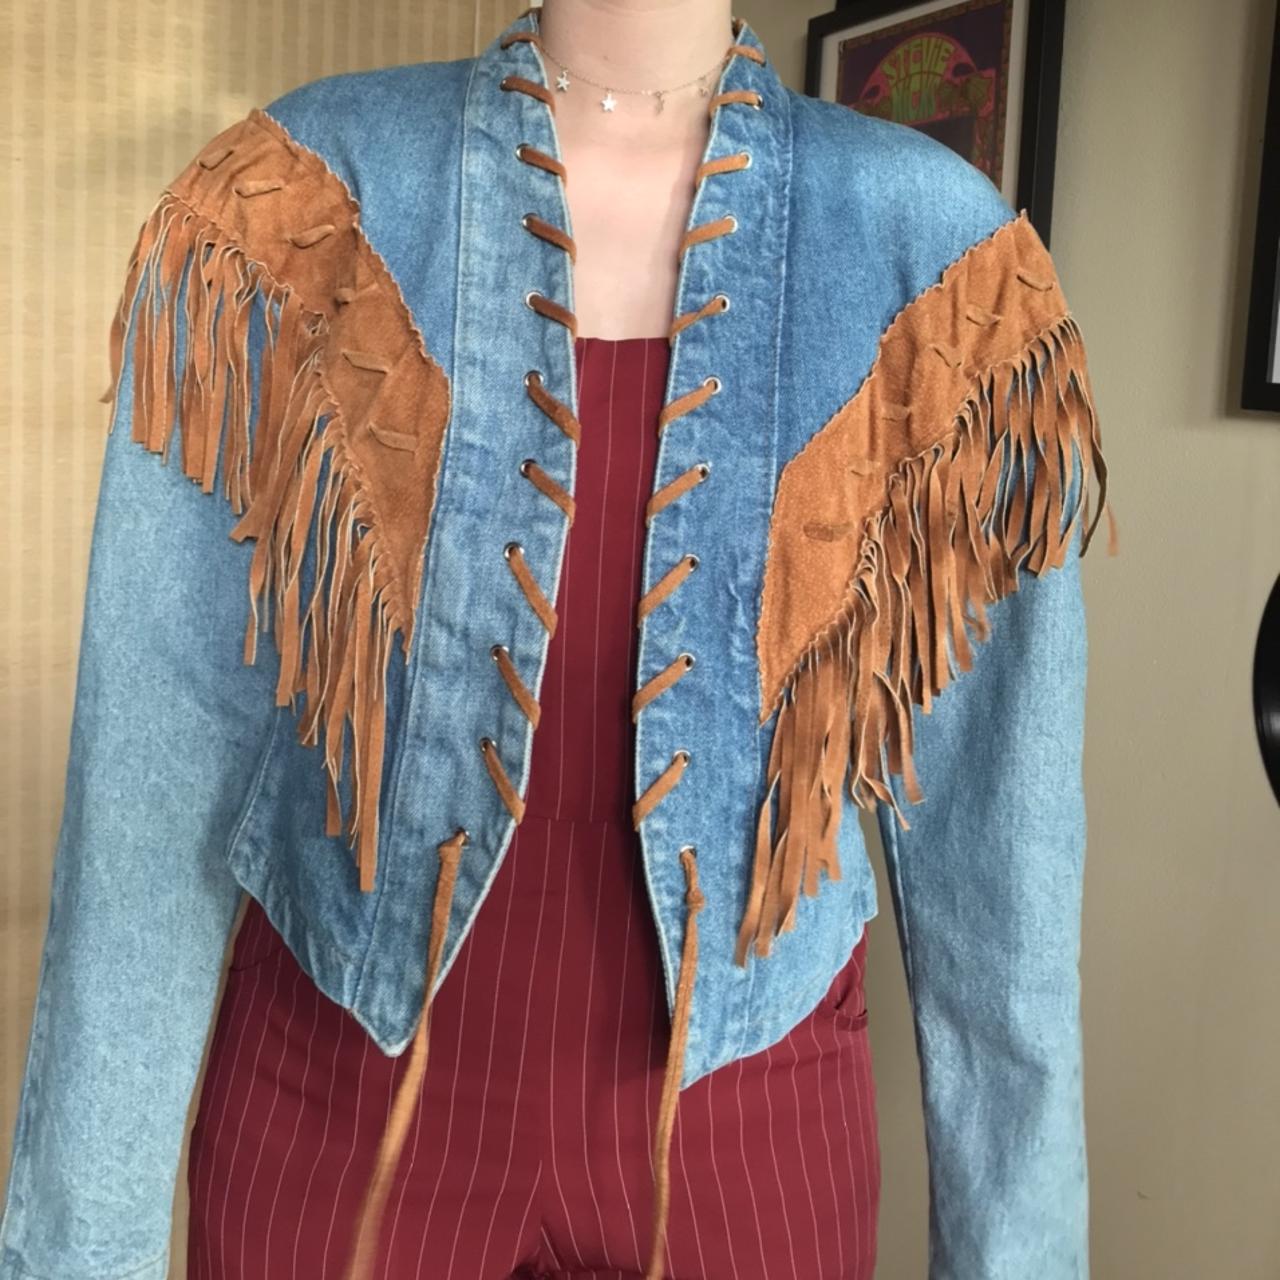 Vintage 1980’s fringe jean jacket